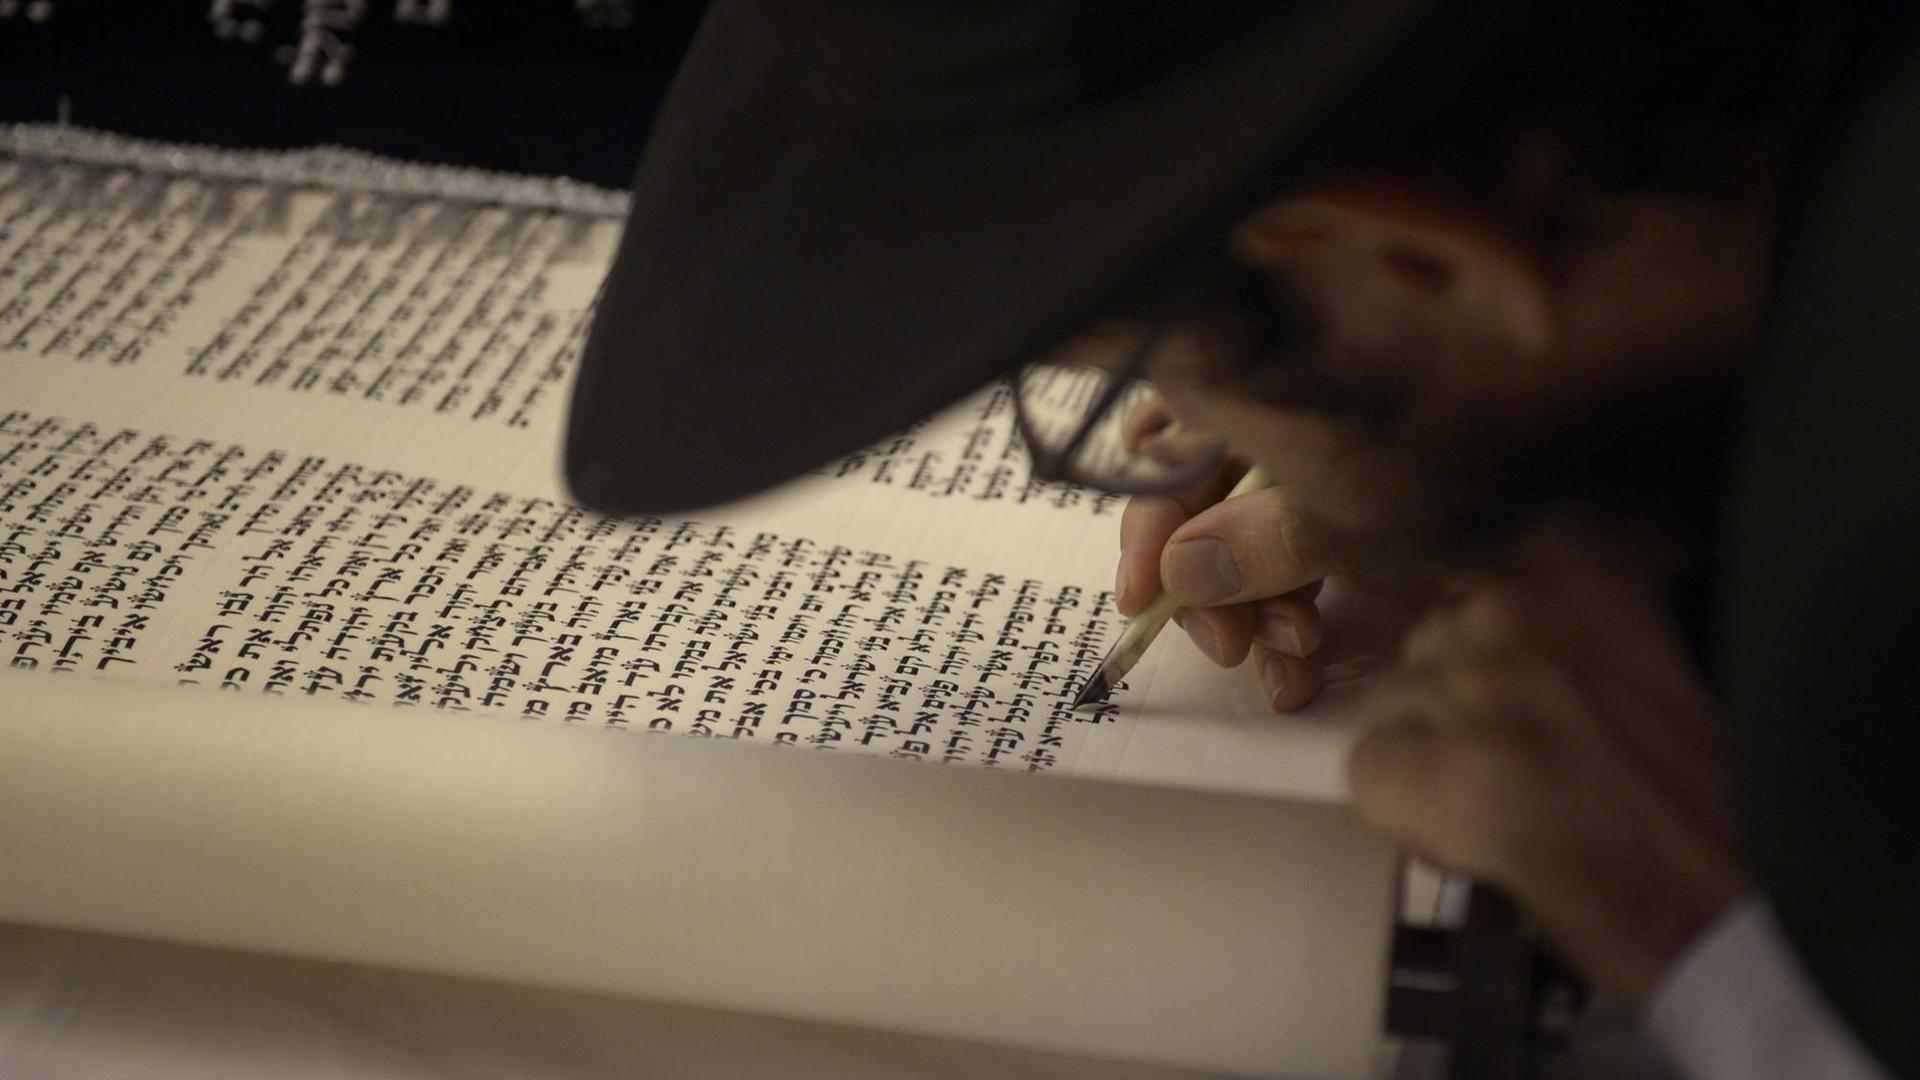 Rabbi Mendy Goldshmid aus Koh Samui, Thailand bei den Abschlussarbeiten an einer neuen Ausgabe der Thora oder Jüdischen Gesetzgebung in der Maghain-Aboth-Synagoge in der Waterloo Street am 30. September 2015.